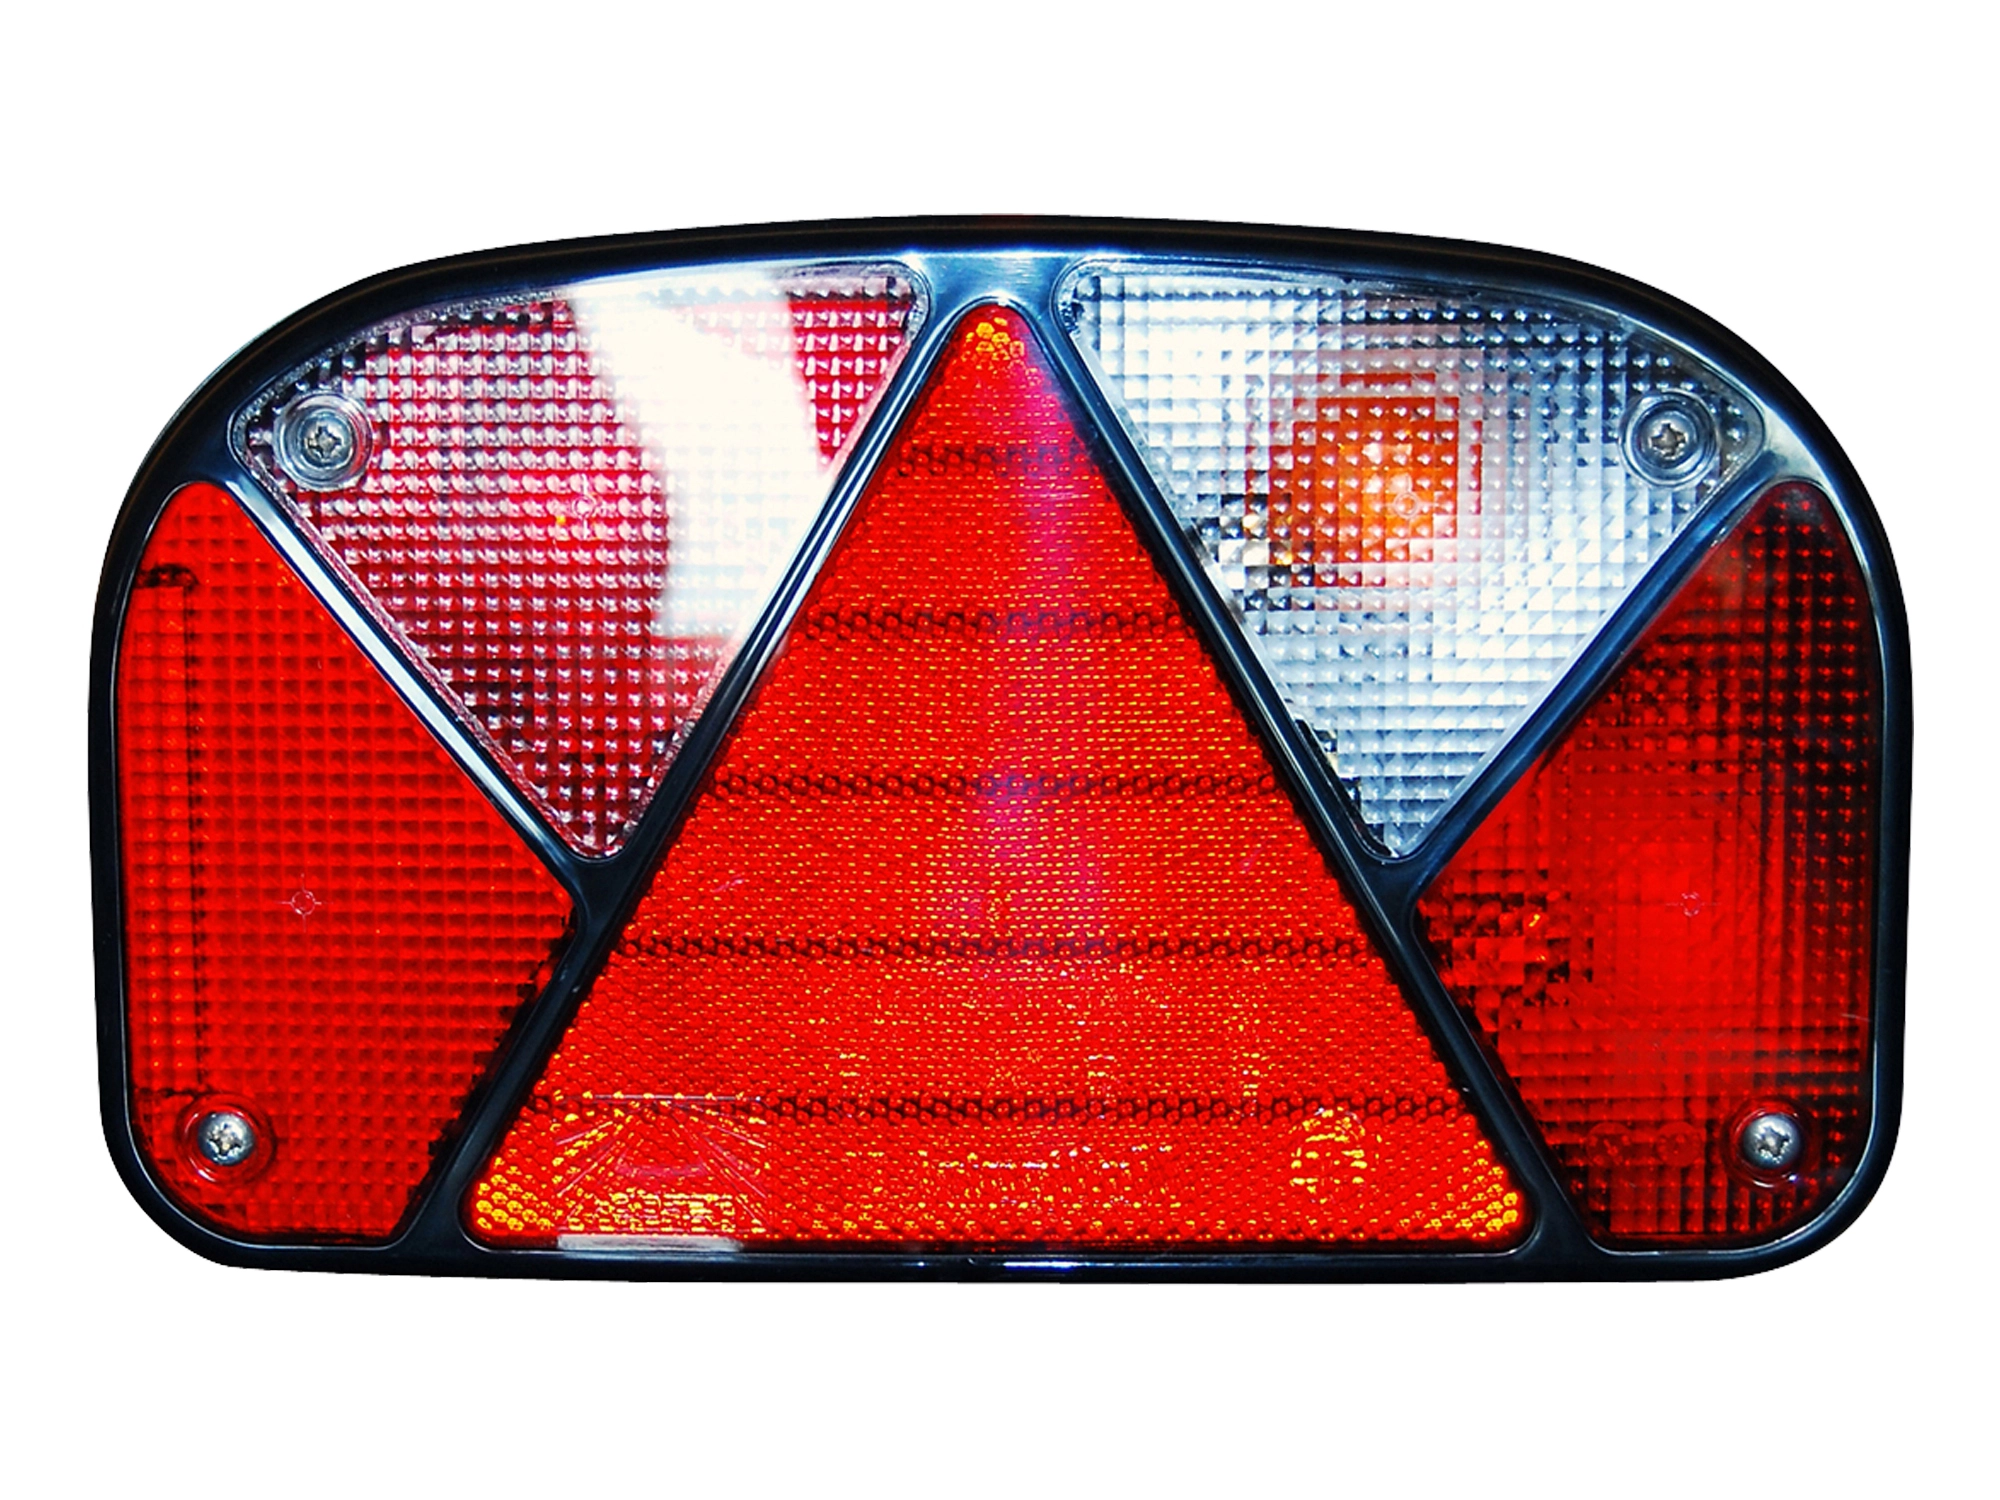 Las LED Rückleuchten Set für PKW Anhänger kaufen bei OBI